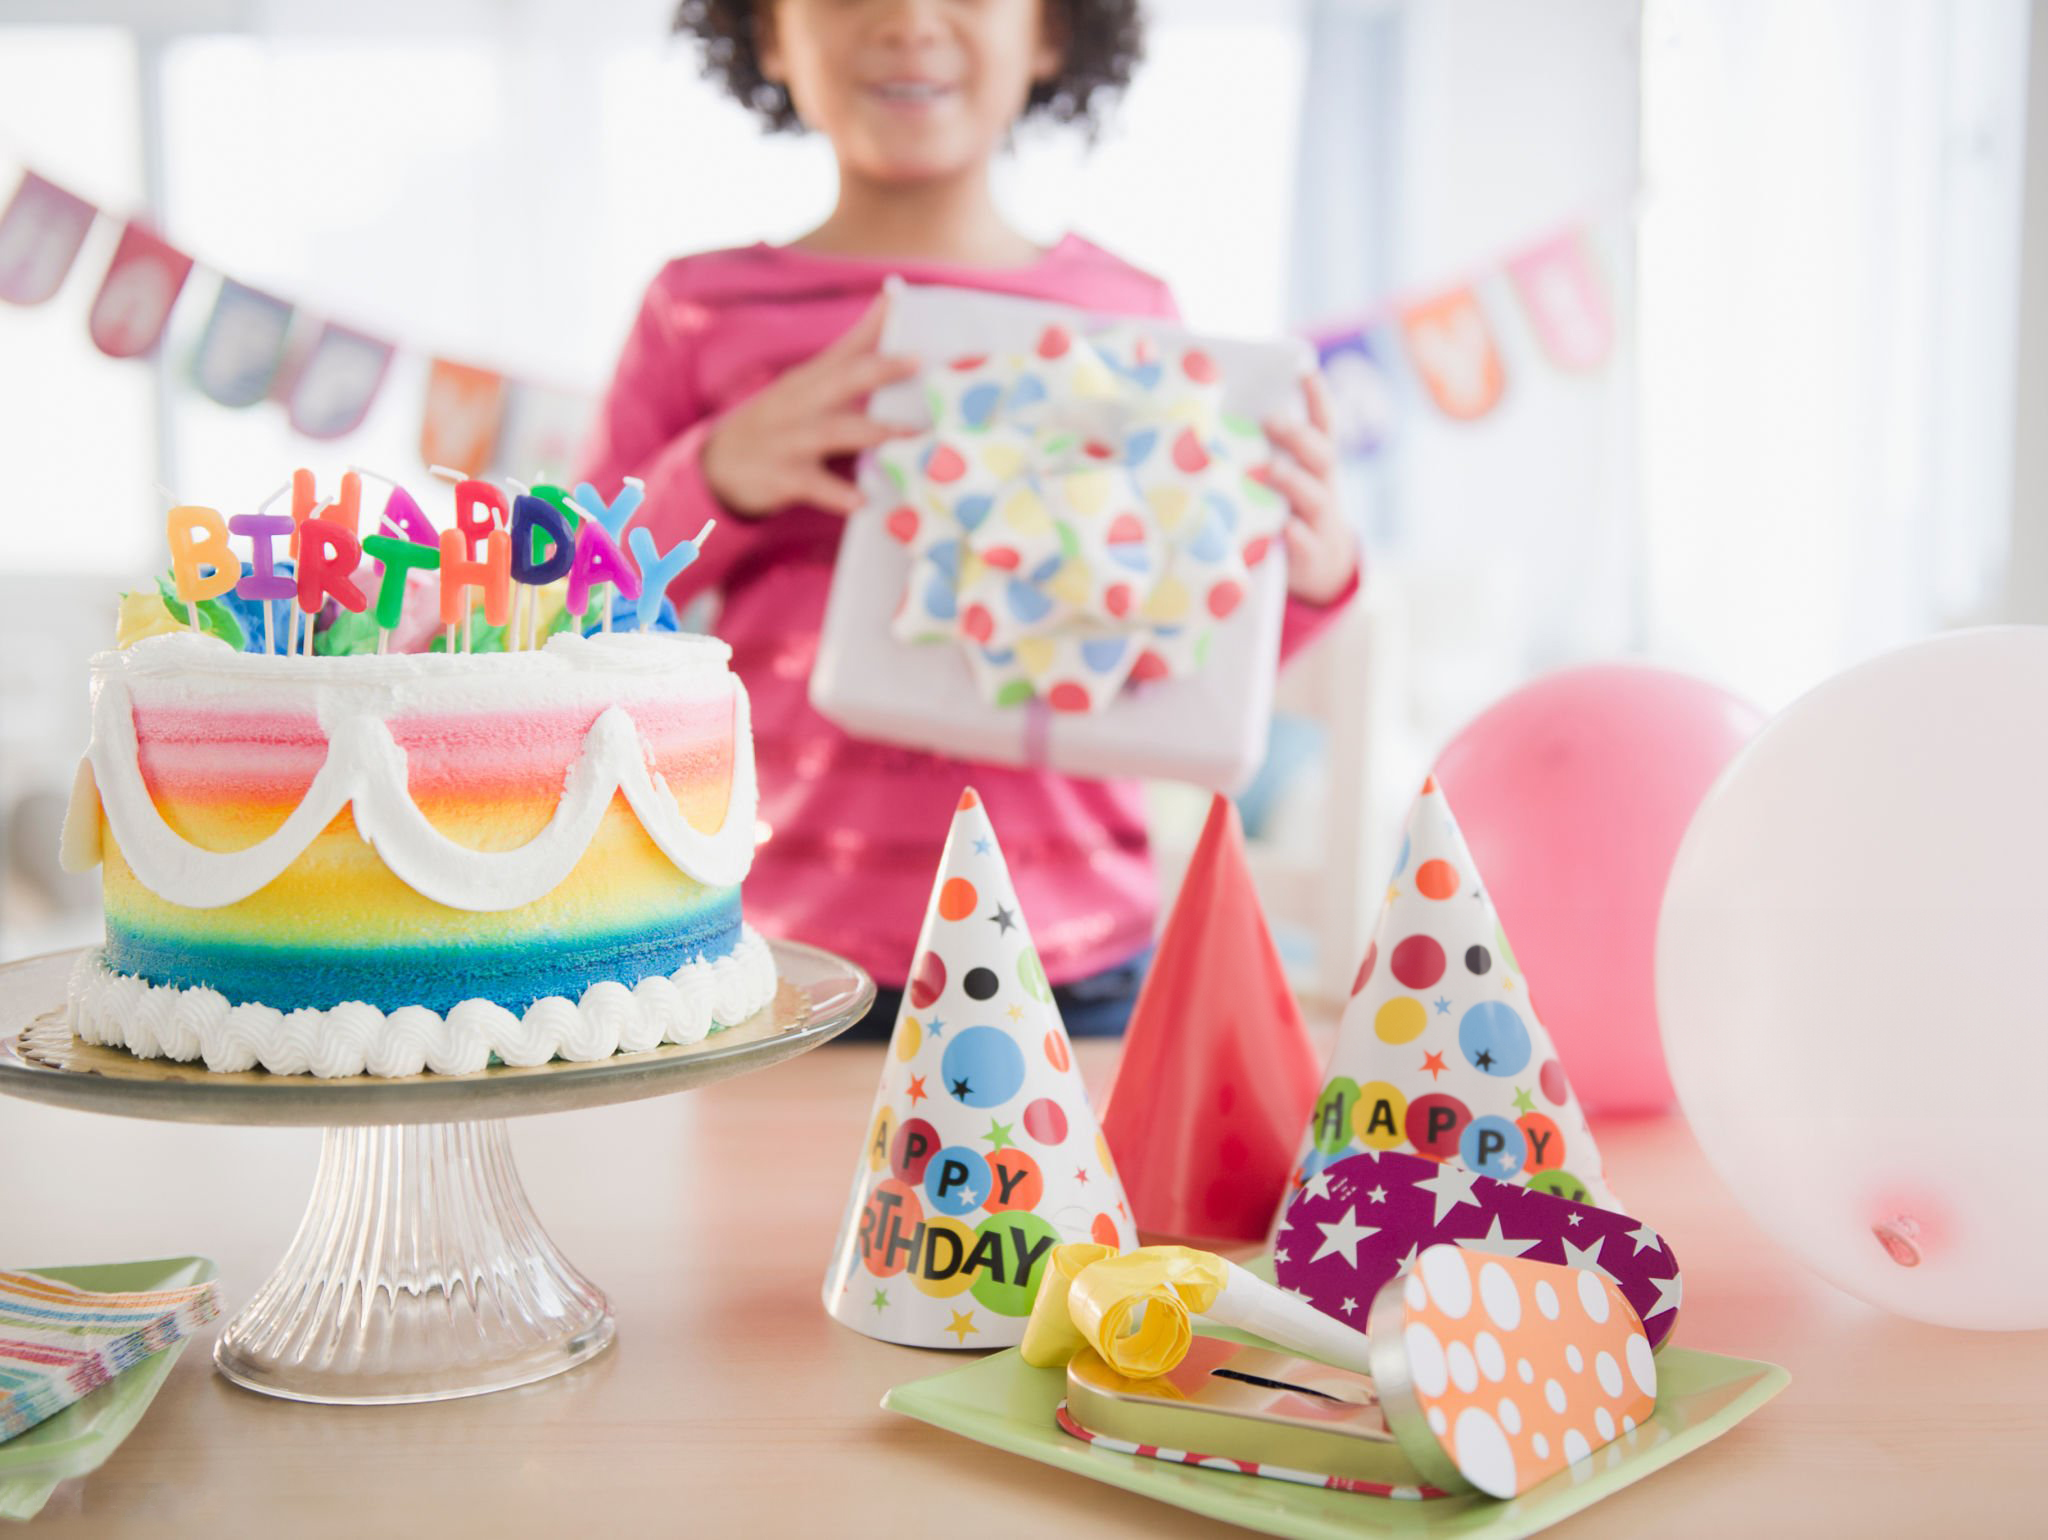 Guide complet pour organiser à un anniversaire génial à son enfant